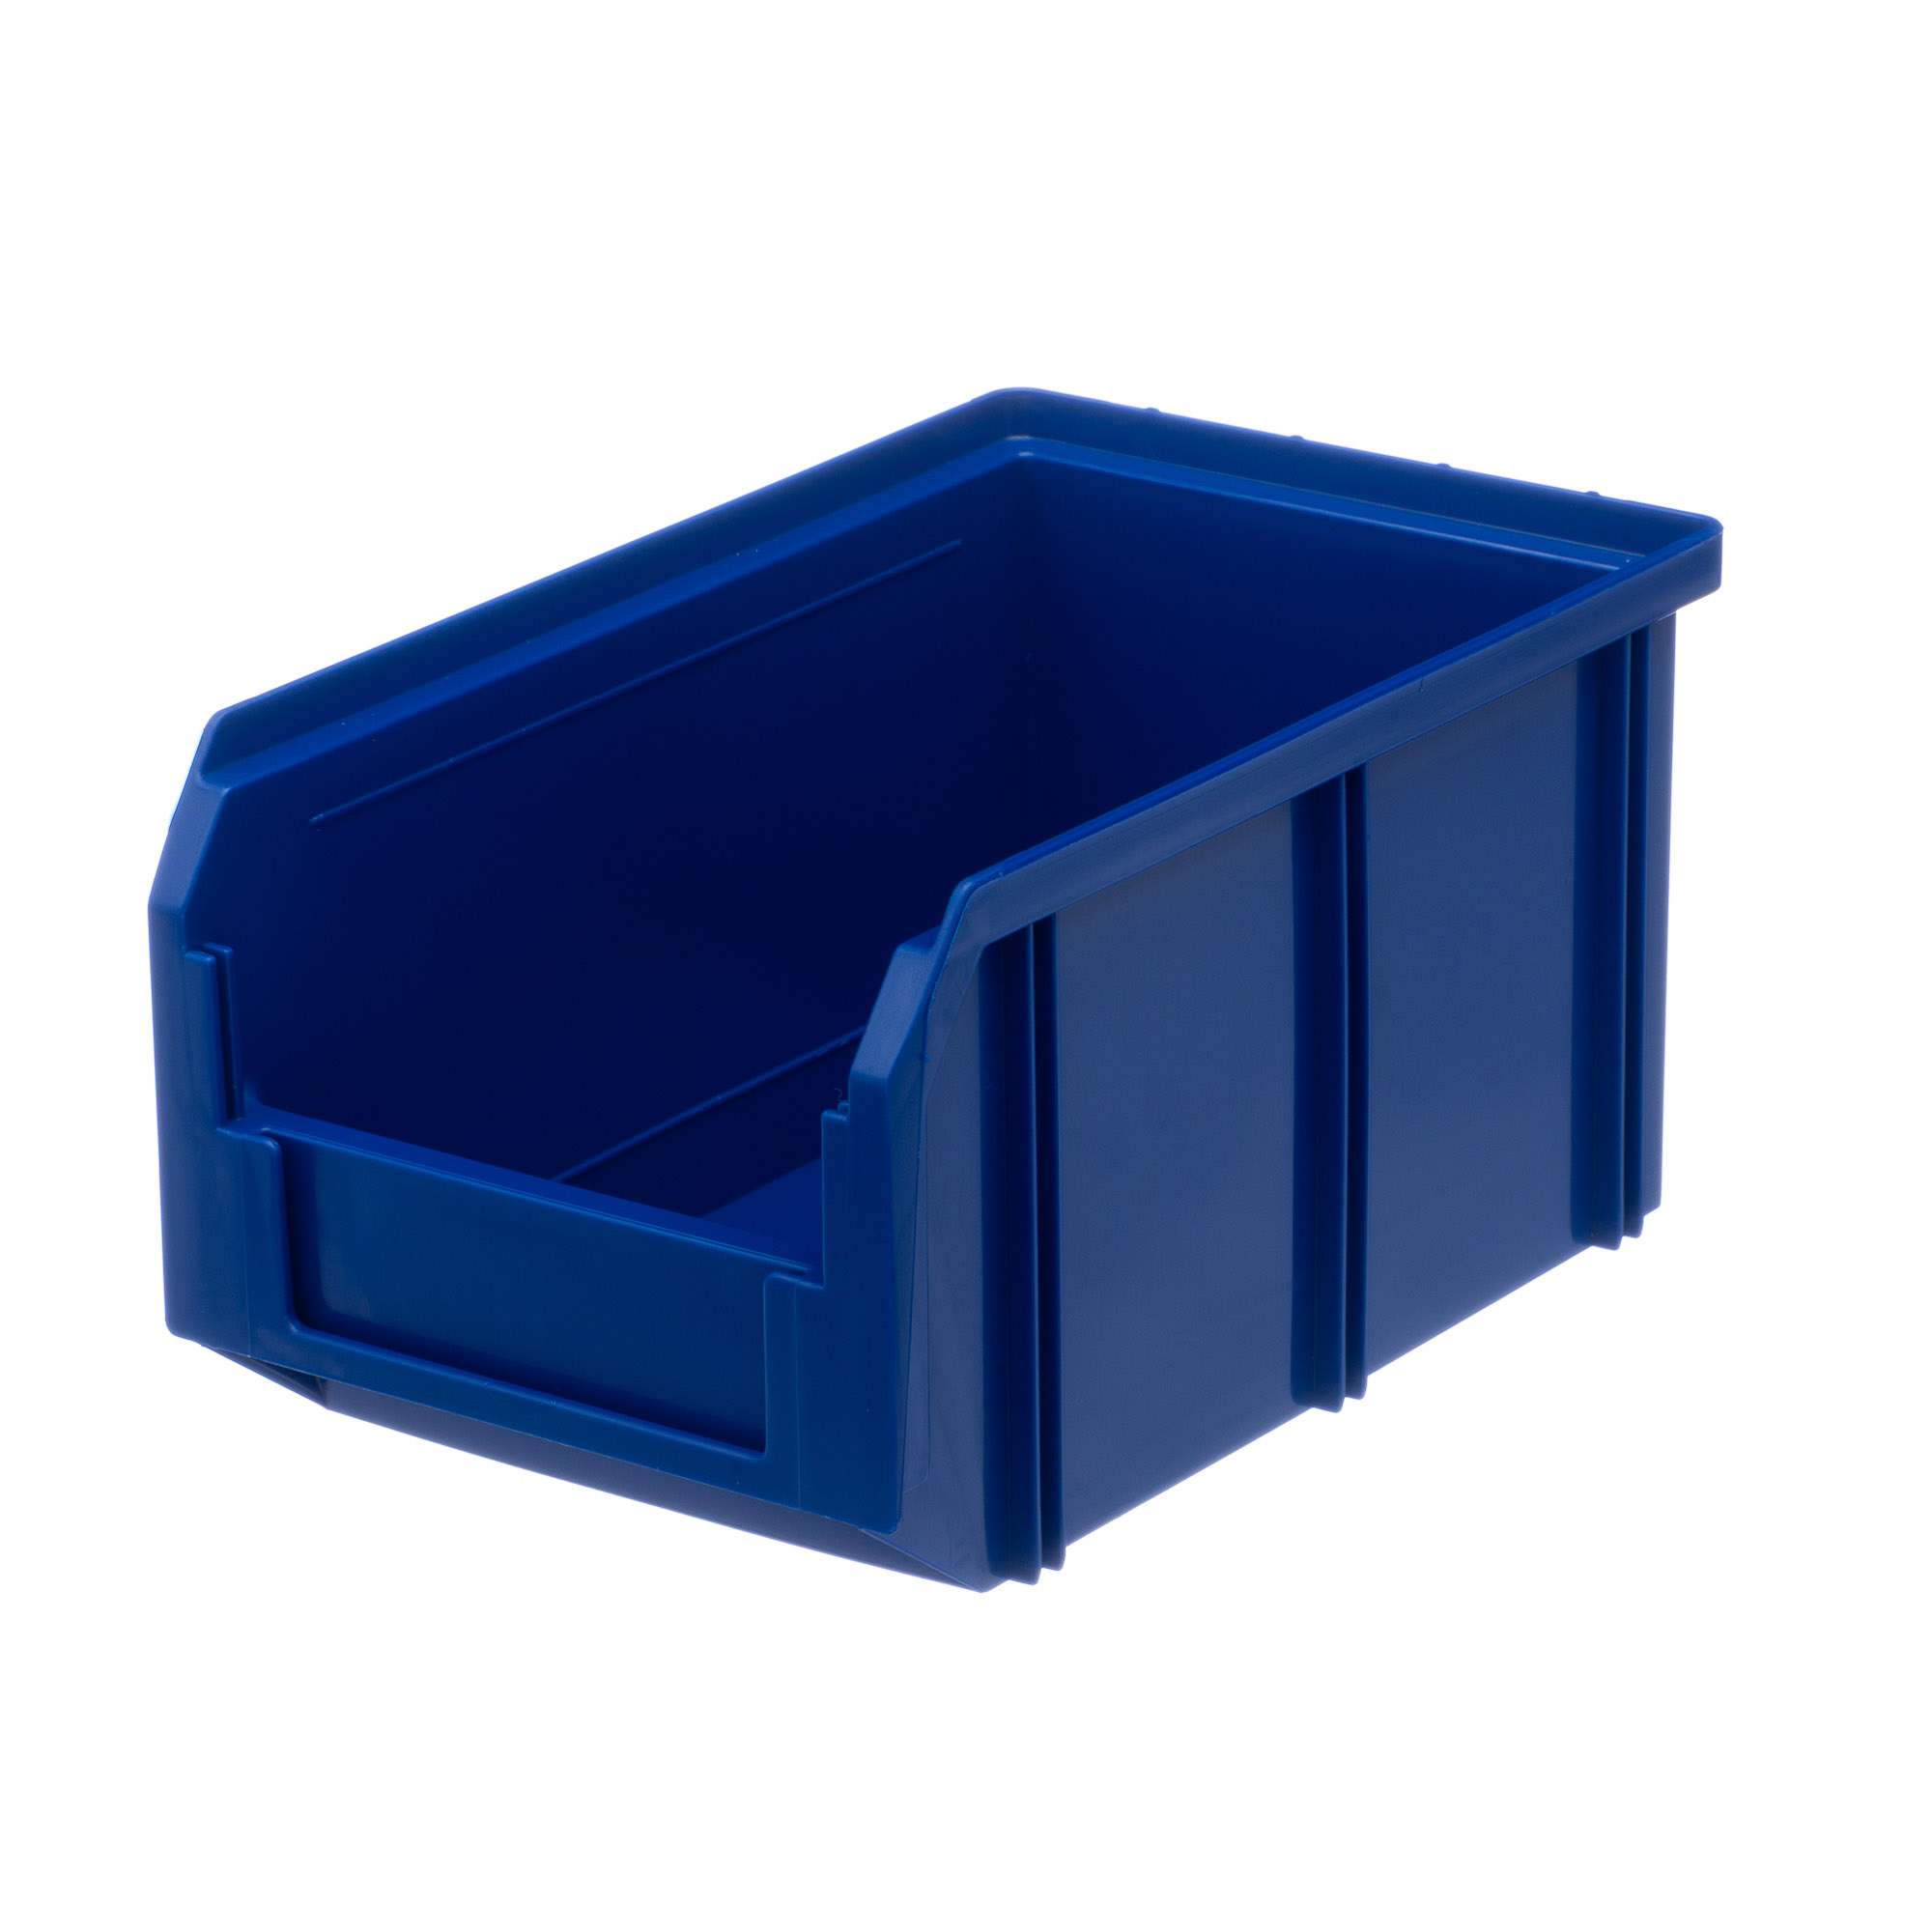 Пластиковый ящик Стелла-техник V-2-синий 234х149х120мм, 3,8 литра лоток для крепежа пластиковый 375х225х160 мм курс 65692